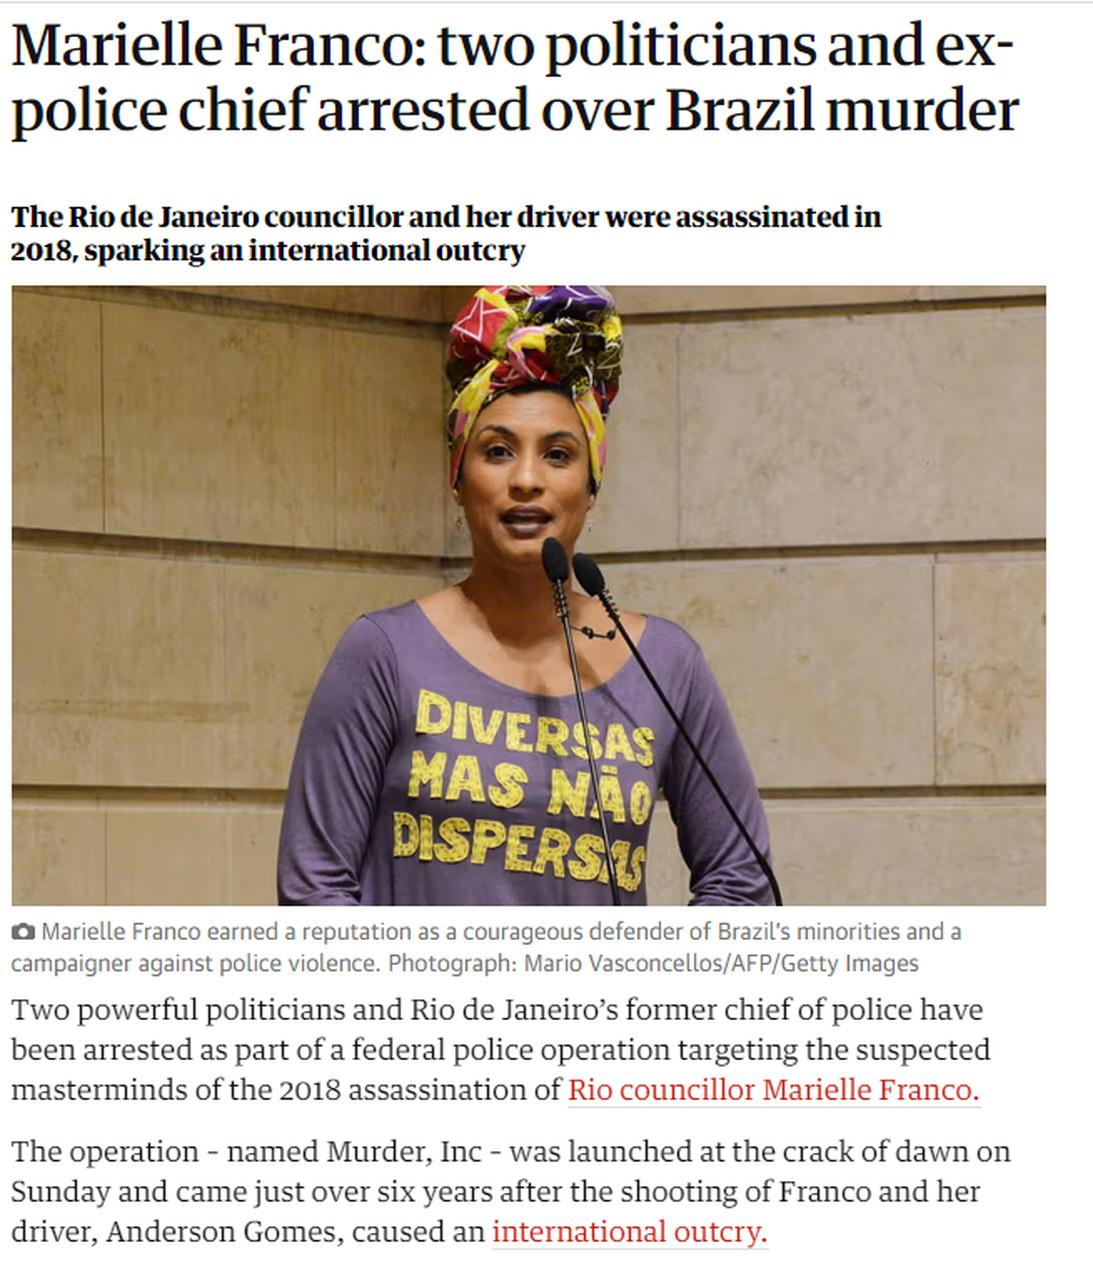 jornal the guardian publicando matéria sobre a prisão dos mandantes da morte de marielle